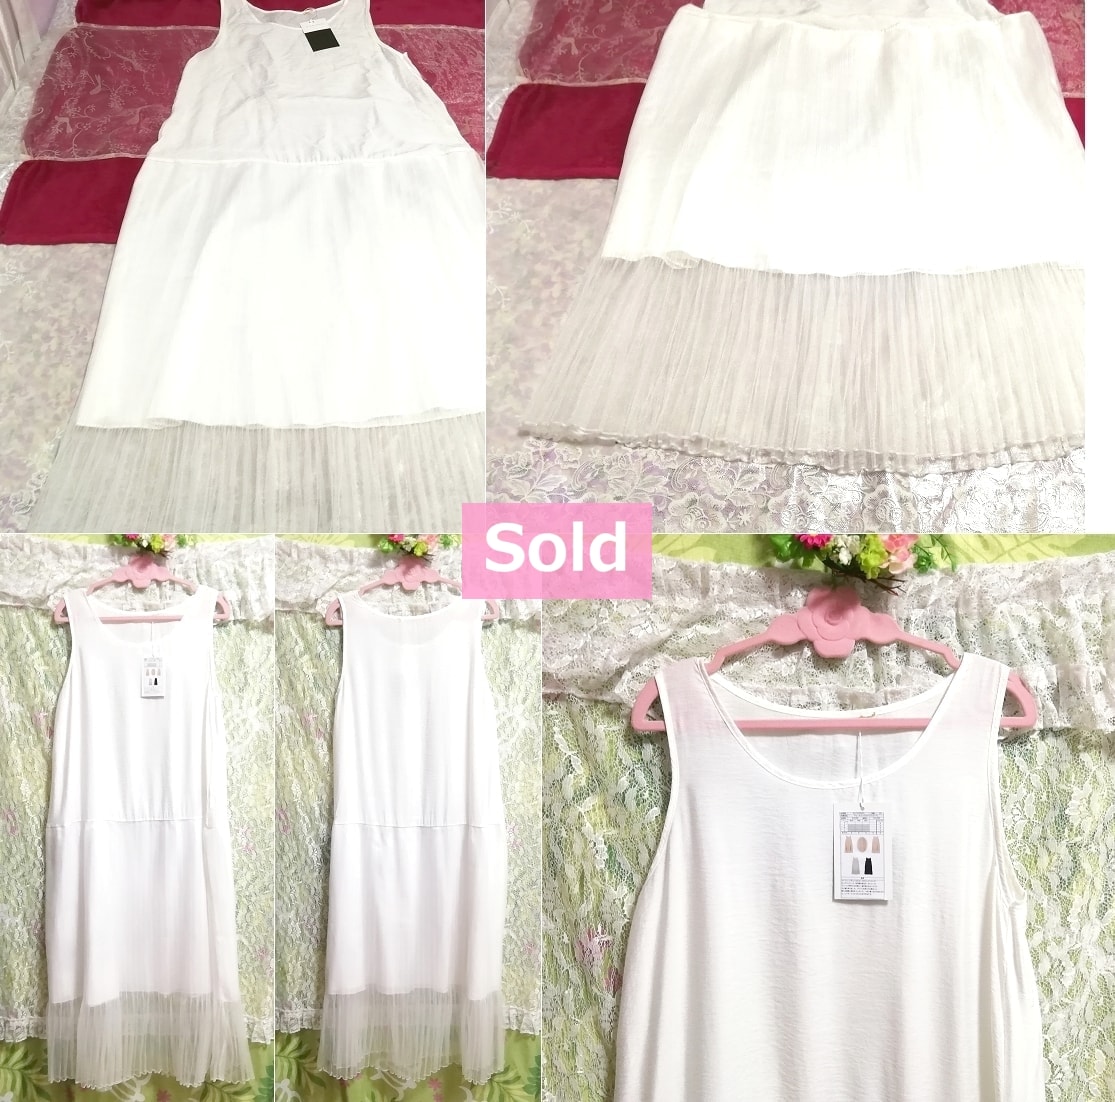 Белая майка, юбка из тюля, макси-платье, цена 16200 ярлыков, платье и длинная юбка, размер M